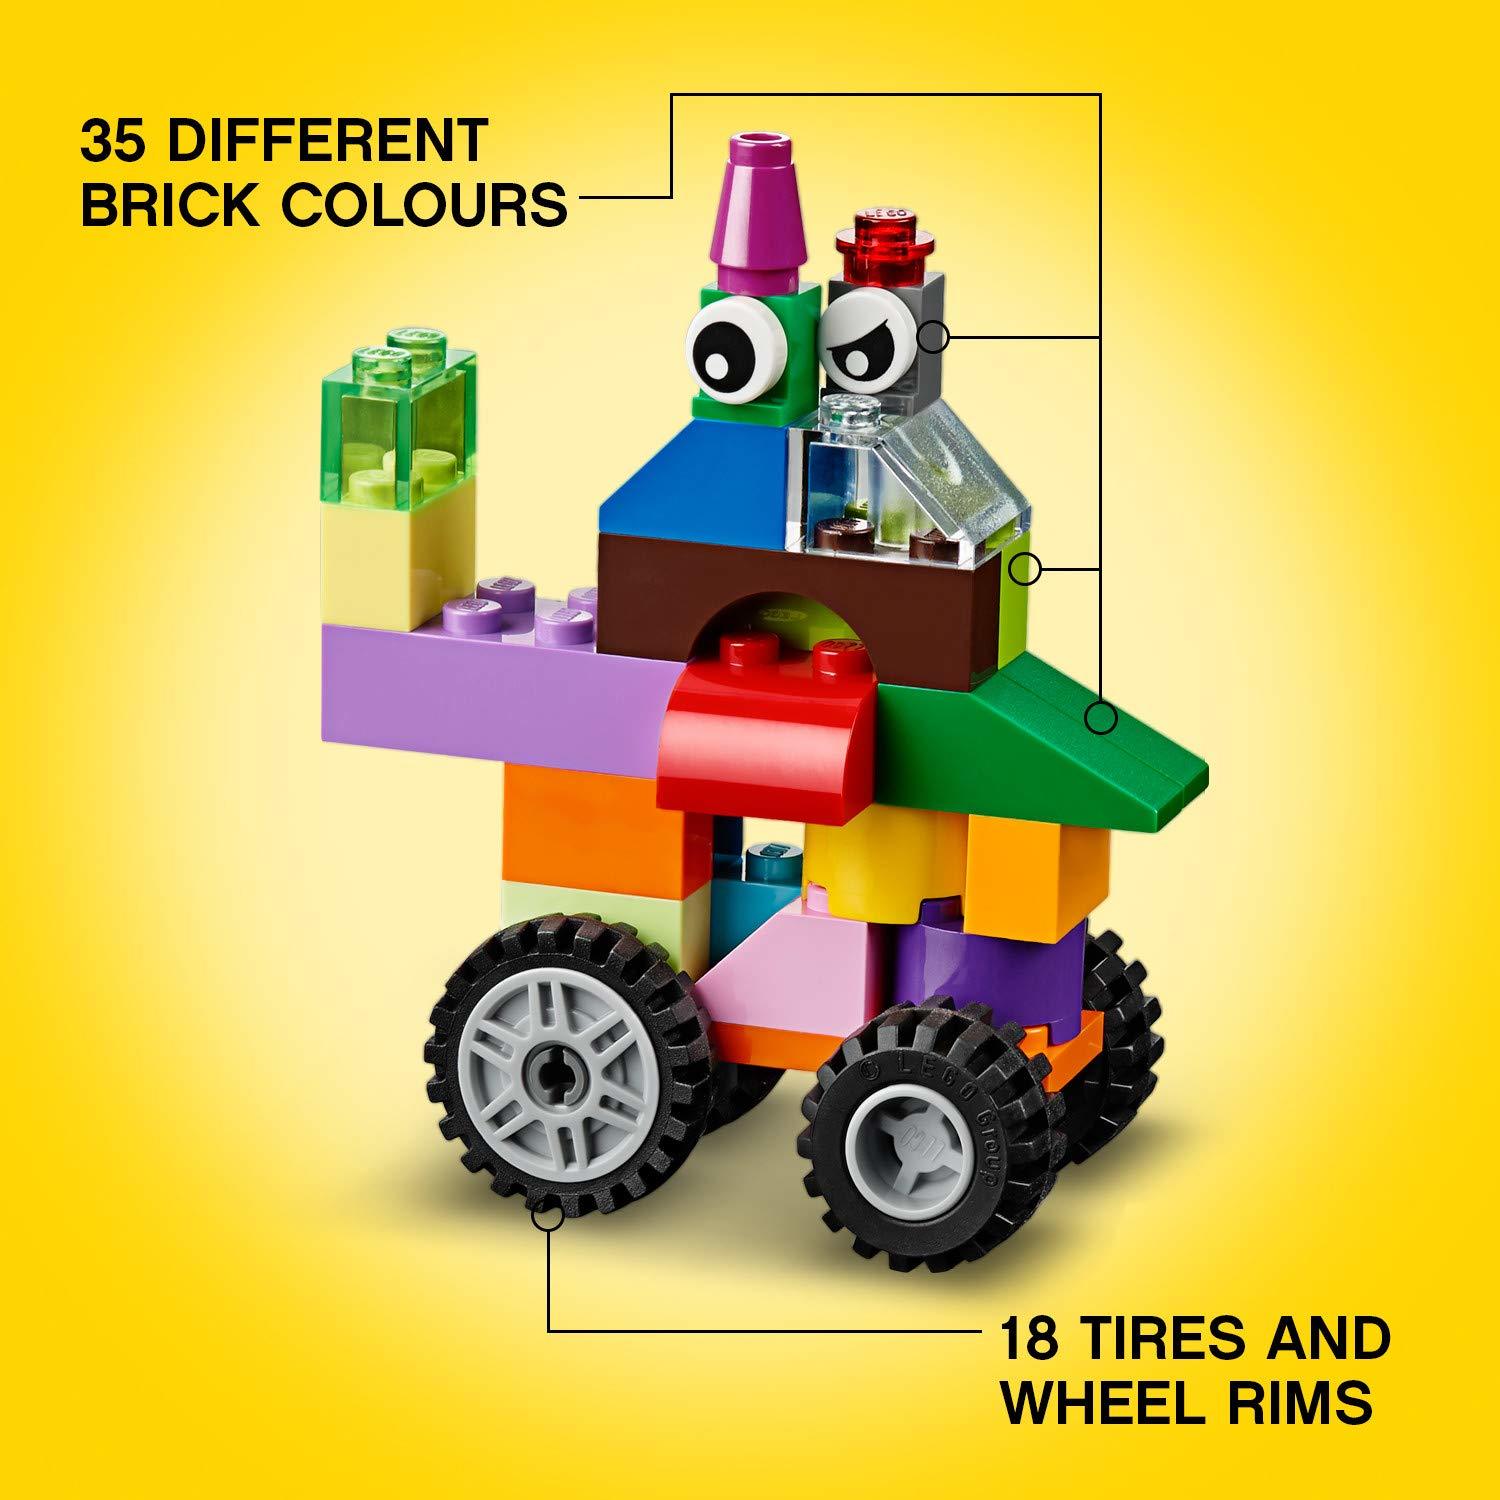 LEGO Classic: Medium Creative Brick Box (10696)